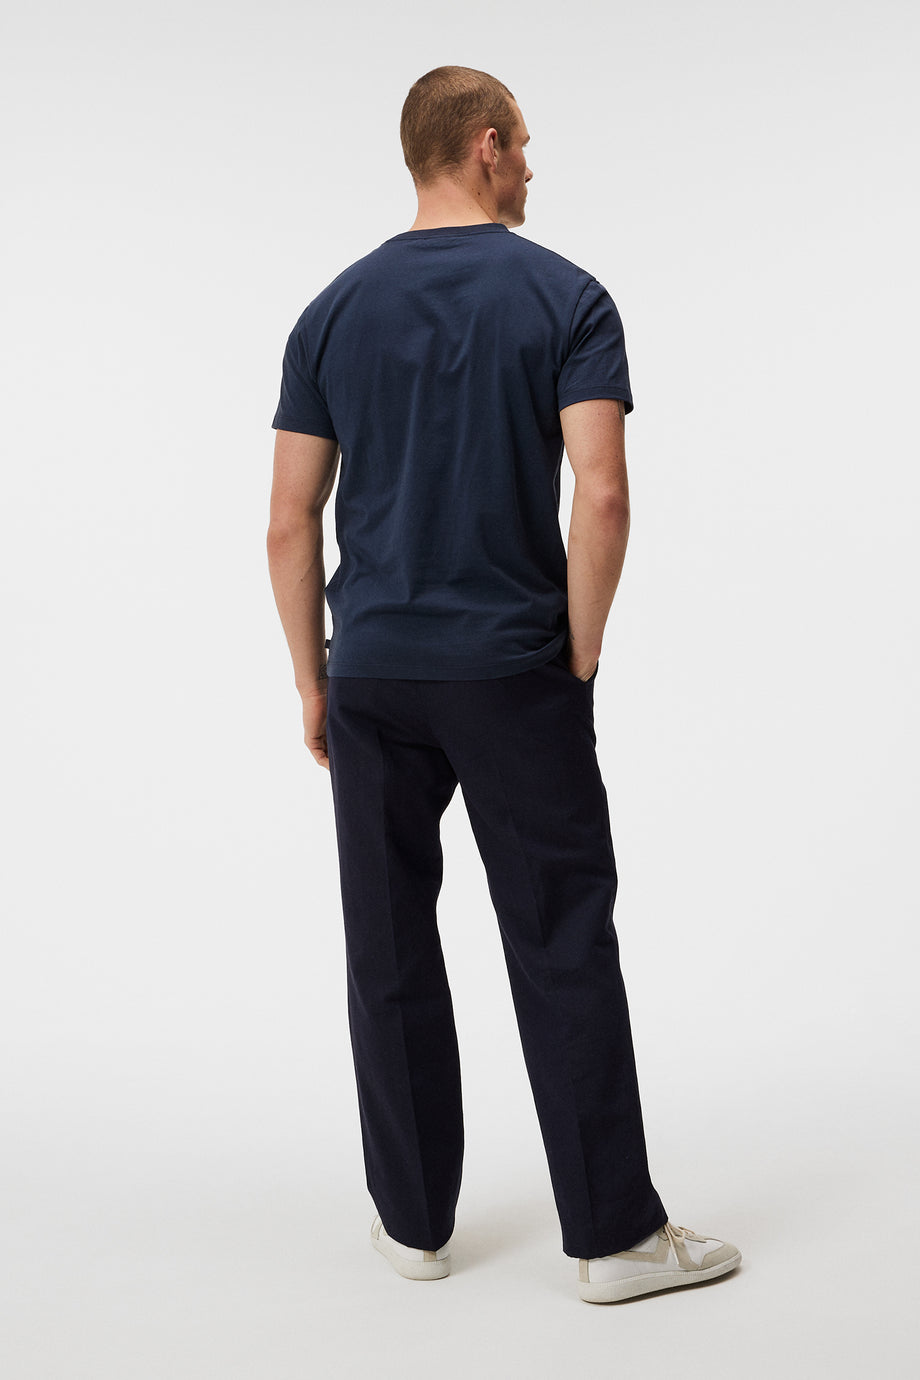 Sid Basic T-Shirt / JL Navy